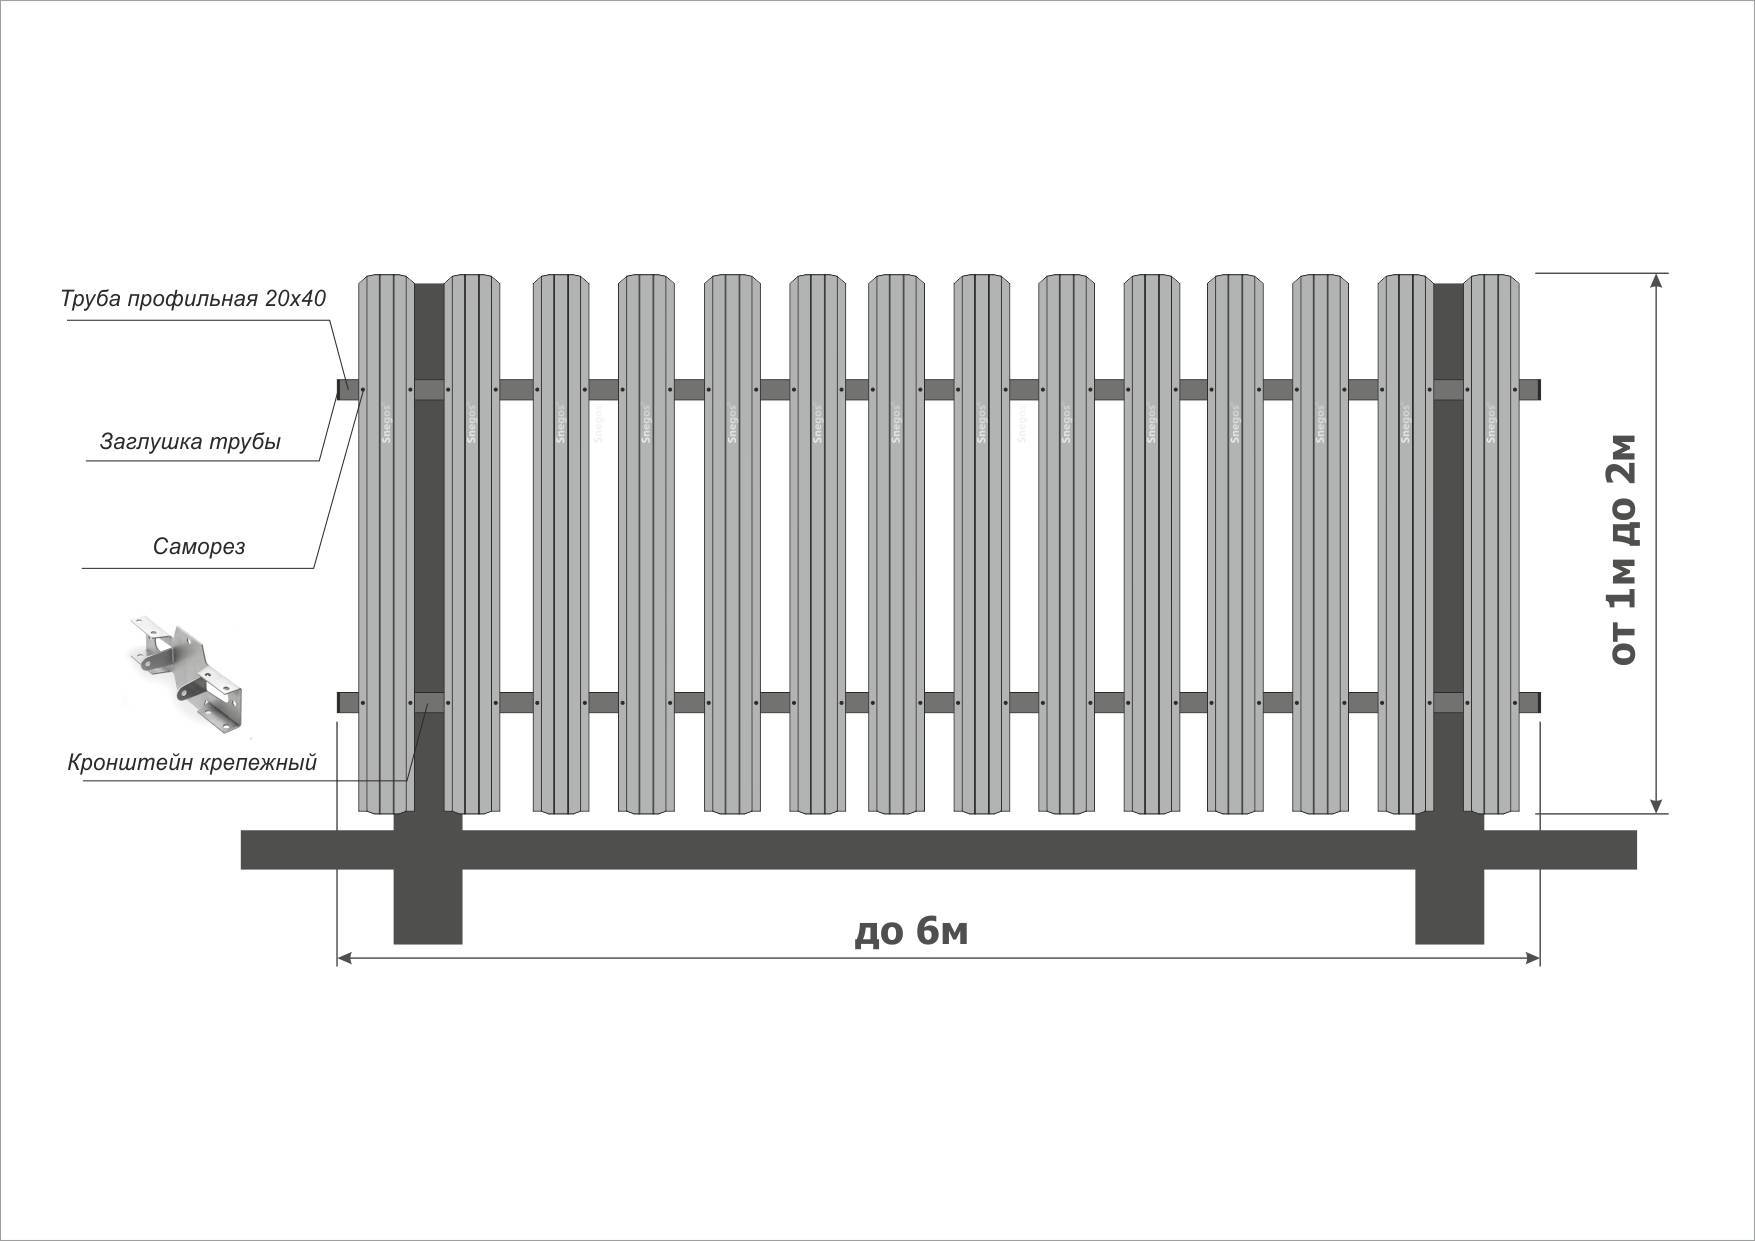 Как сделать забор на даче своими руками: требования и самые популярные материалы, рекомендации по сооружению